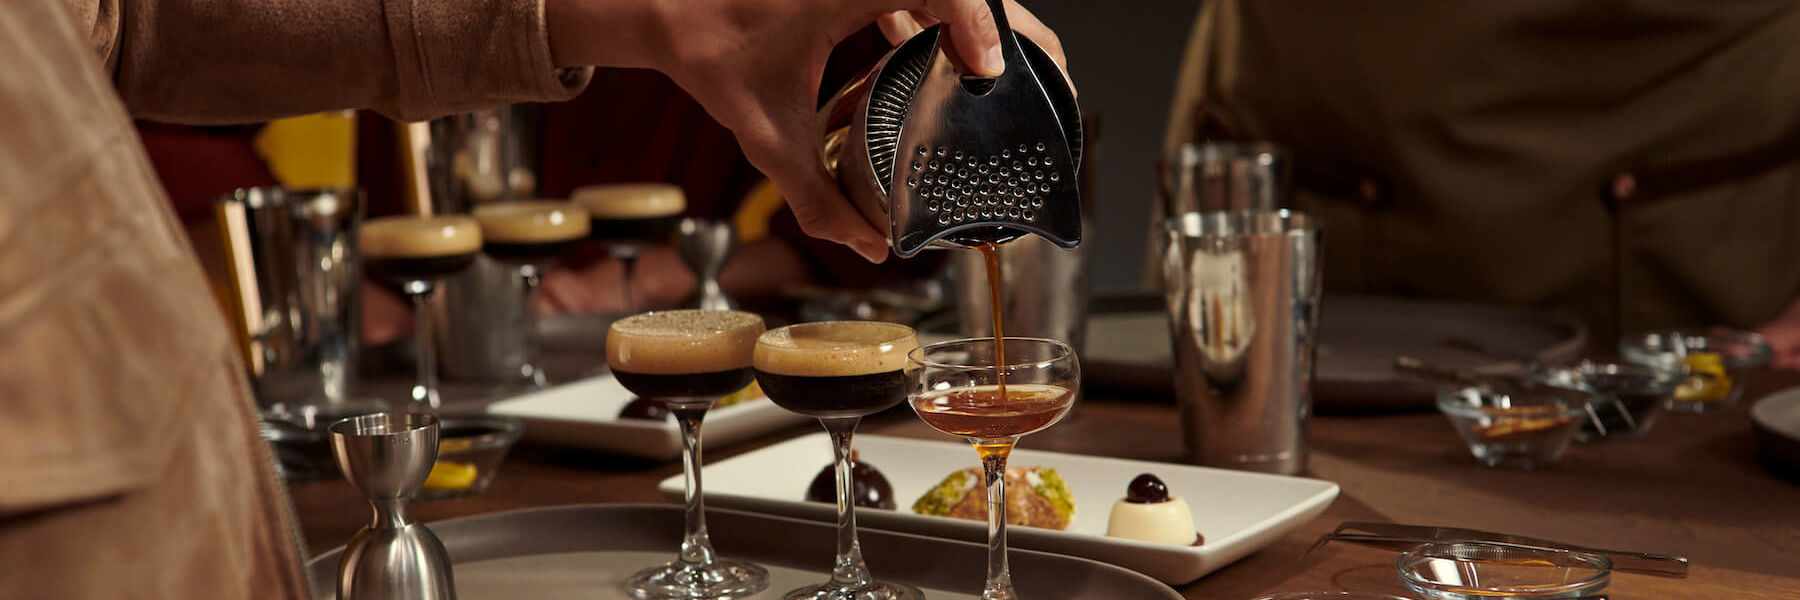 person pouring espresso martini